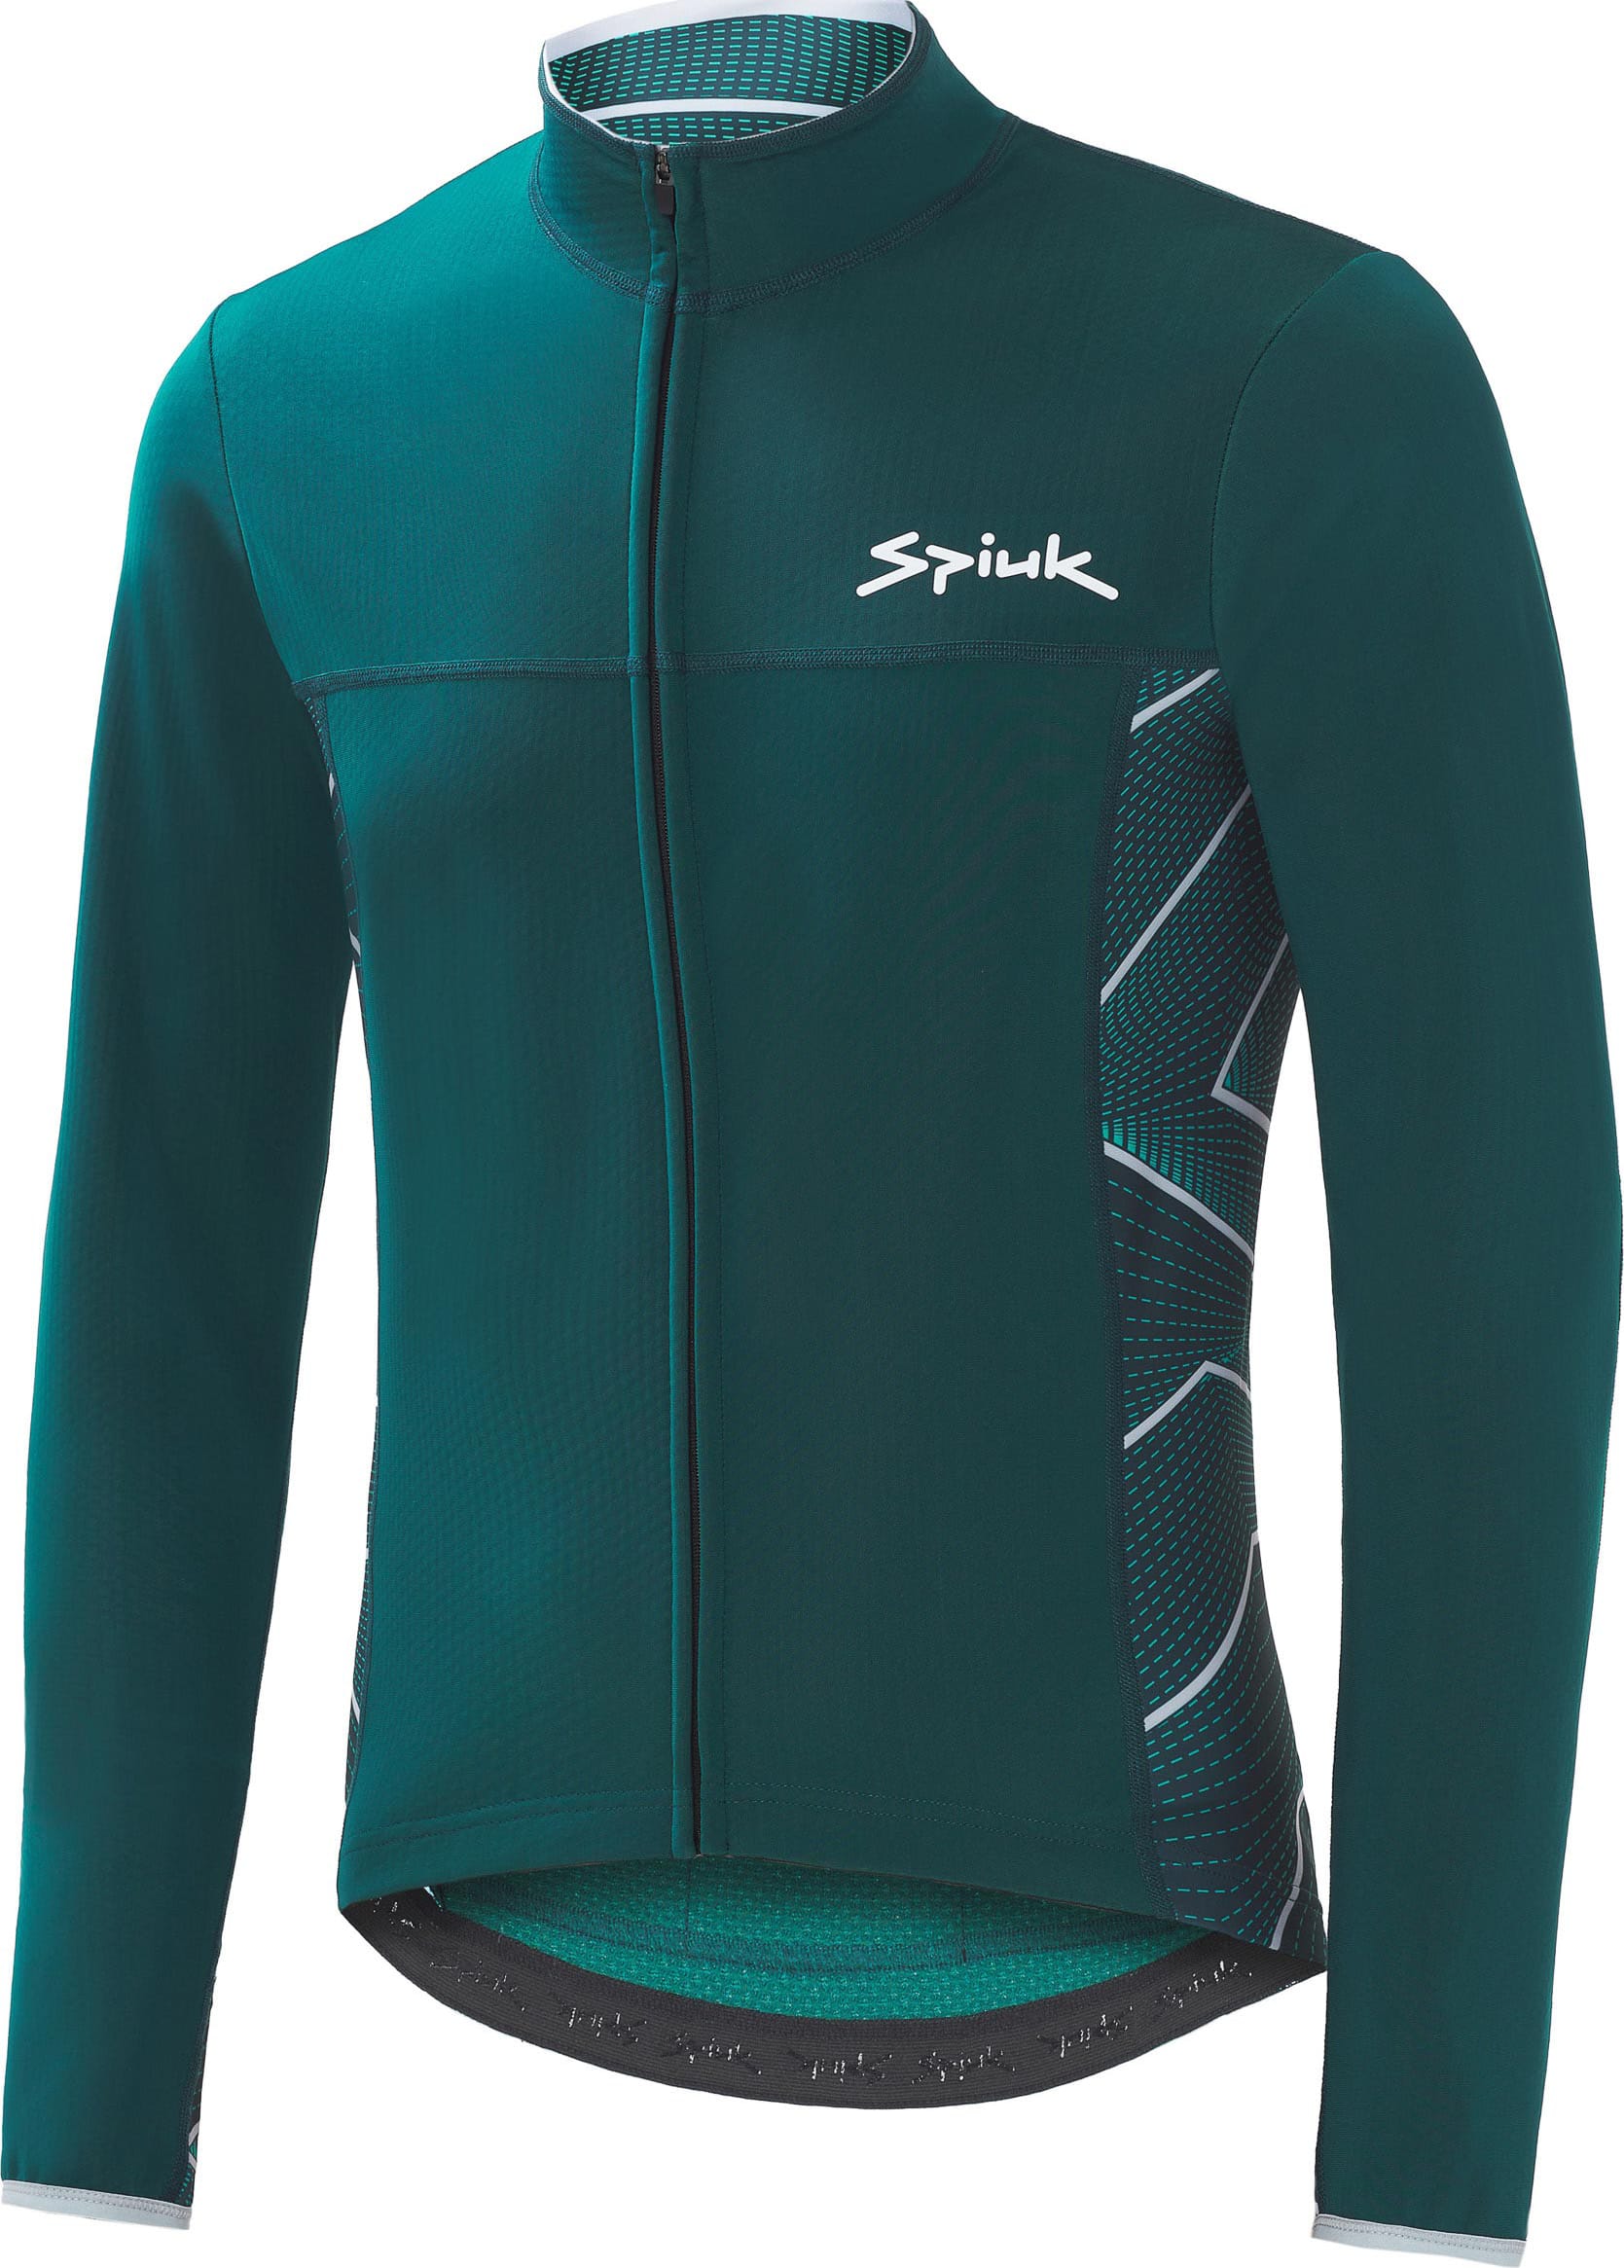 Куртка Spiuk Boreas Light Membrane мужская зеленая XL